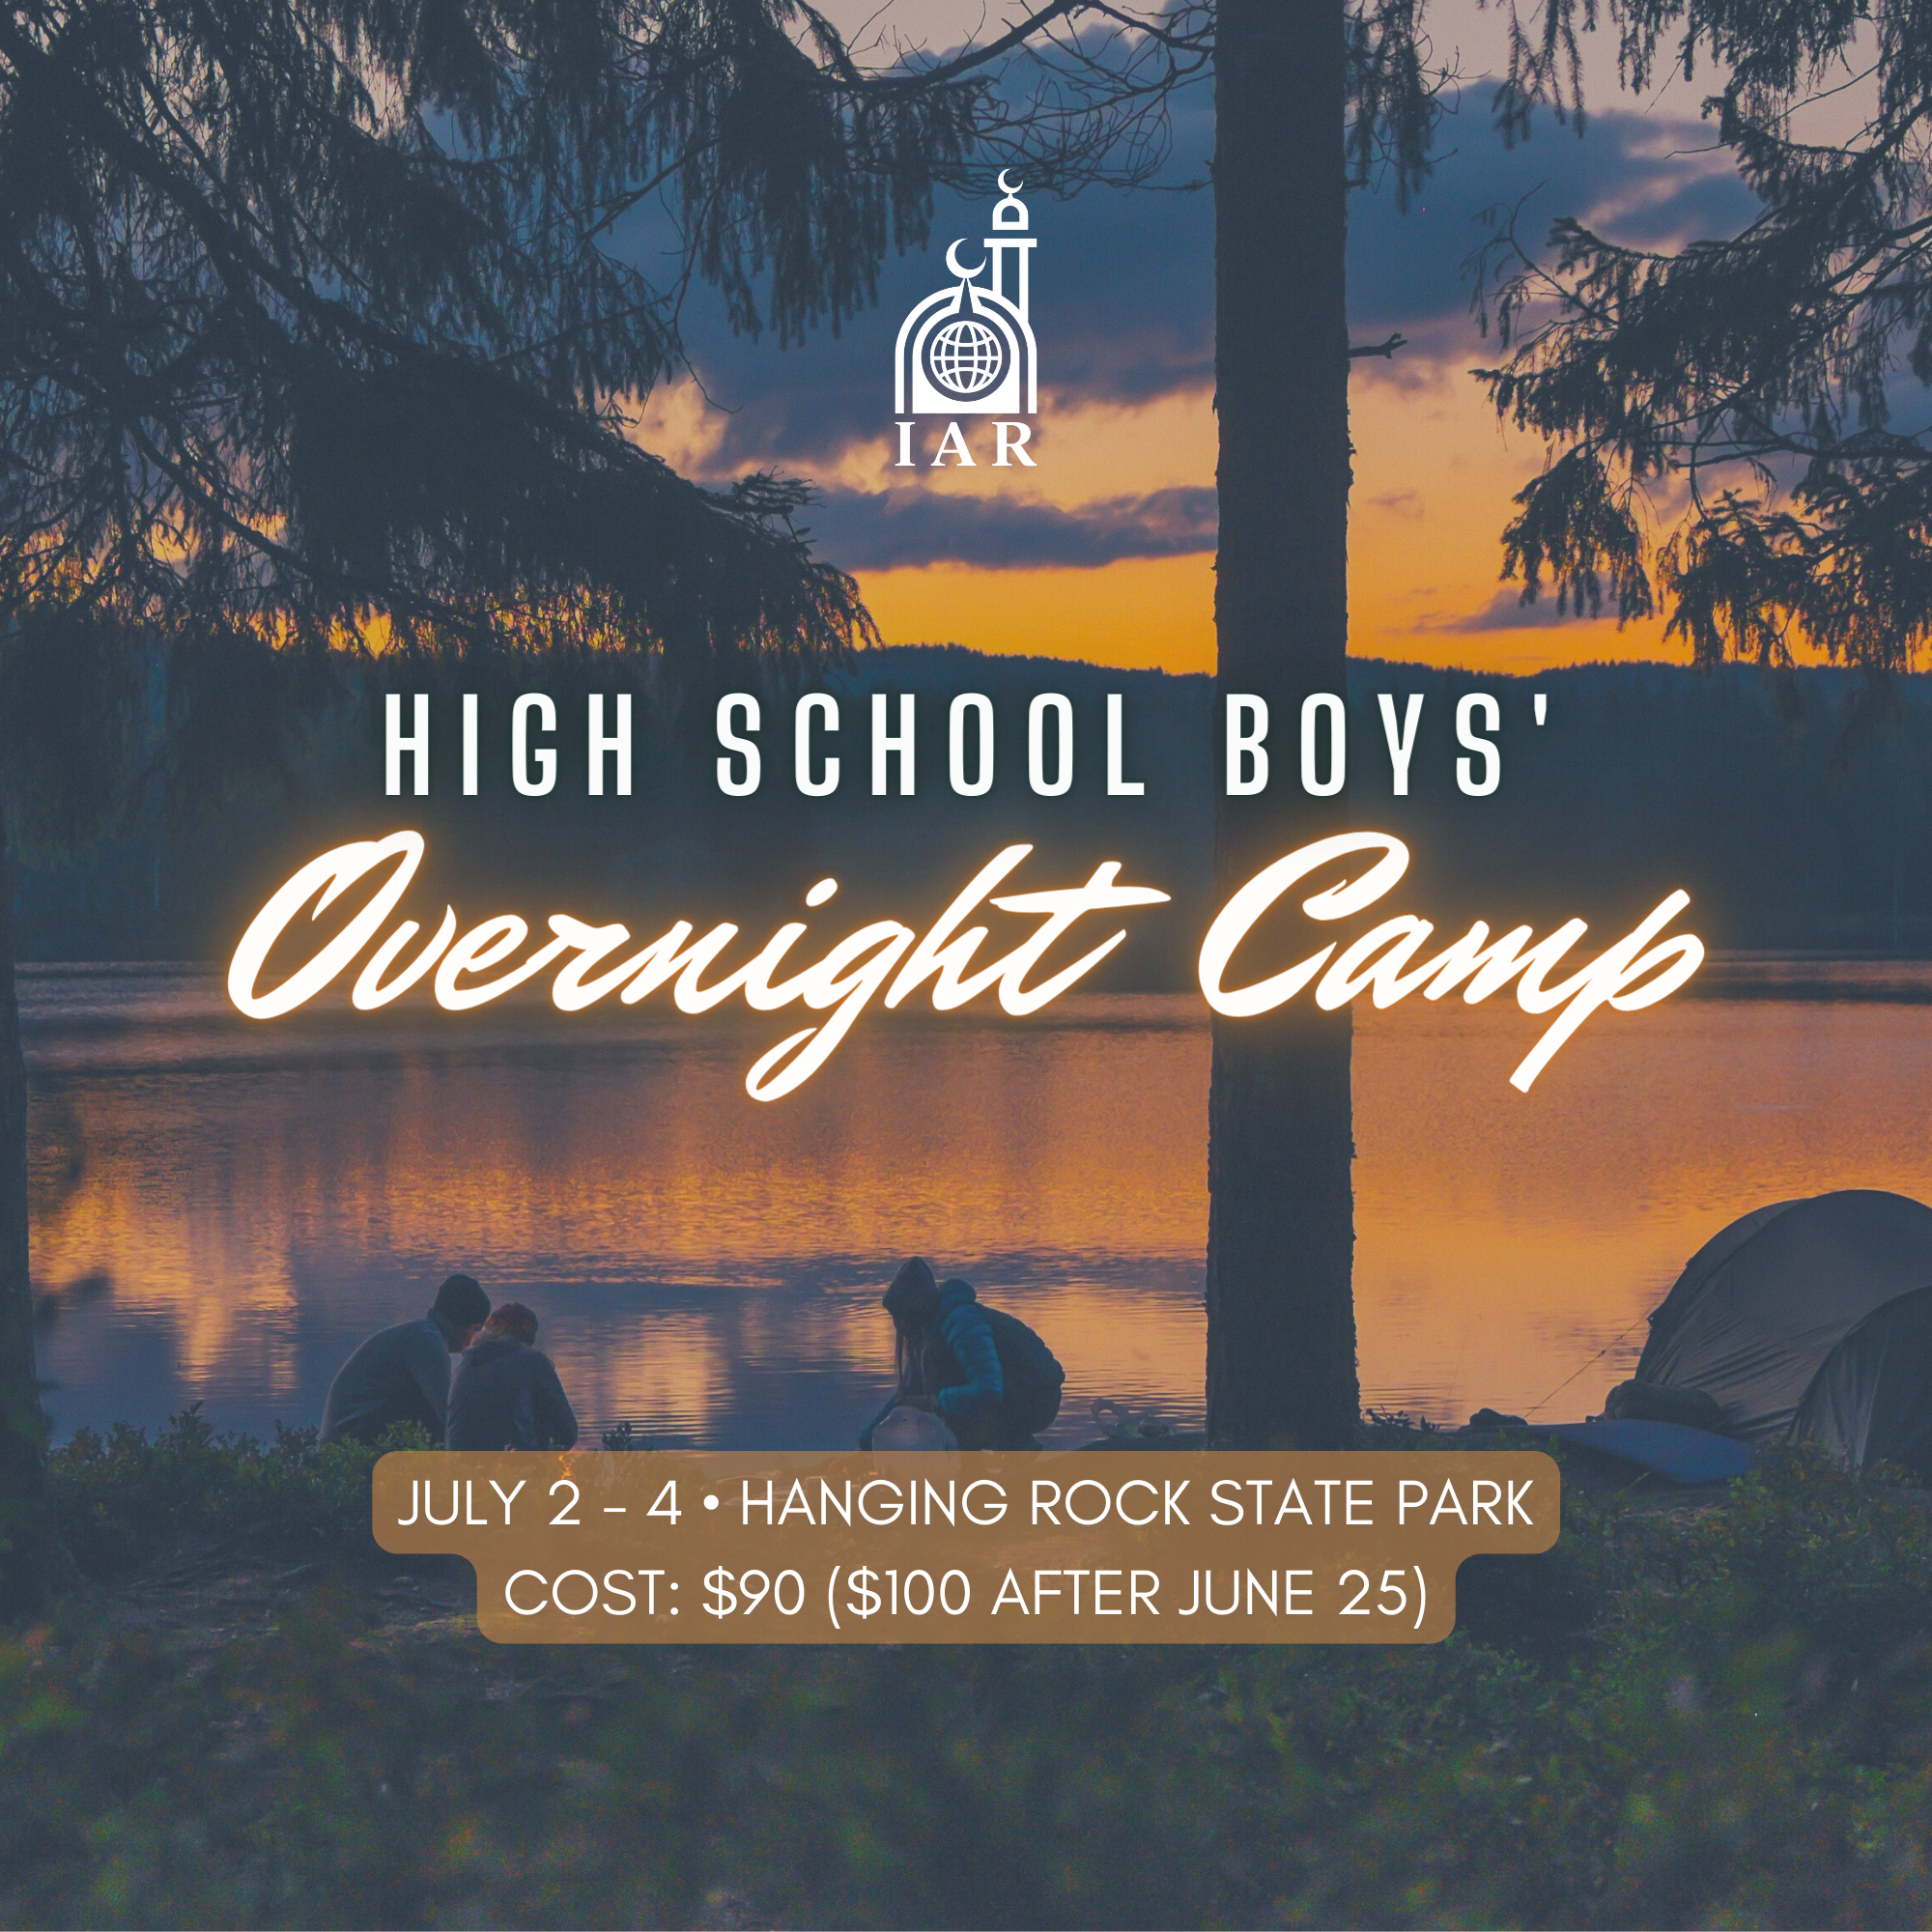 Overnight Camp – HS Boys